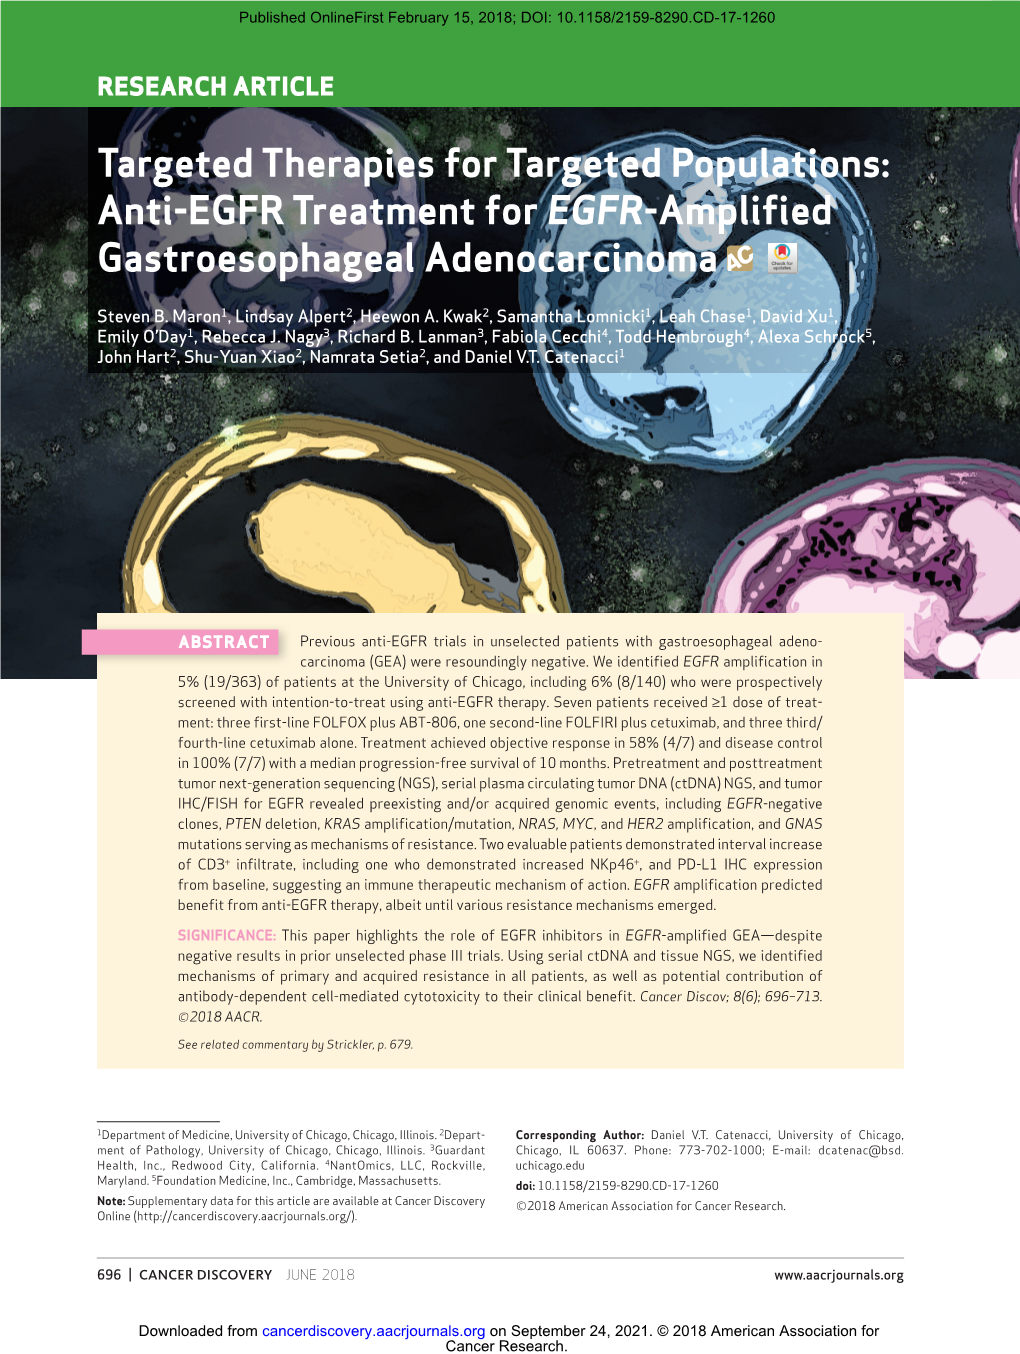 Anti-EGFR Treatment for EGFR-Amplified Gastroesophageal Adenocarcinoma